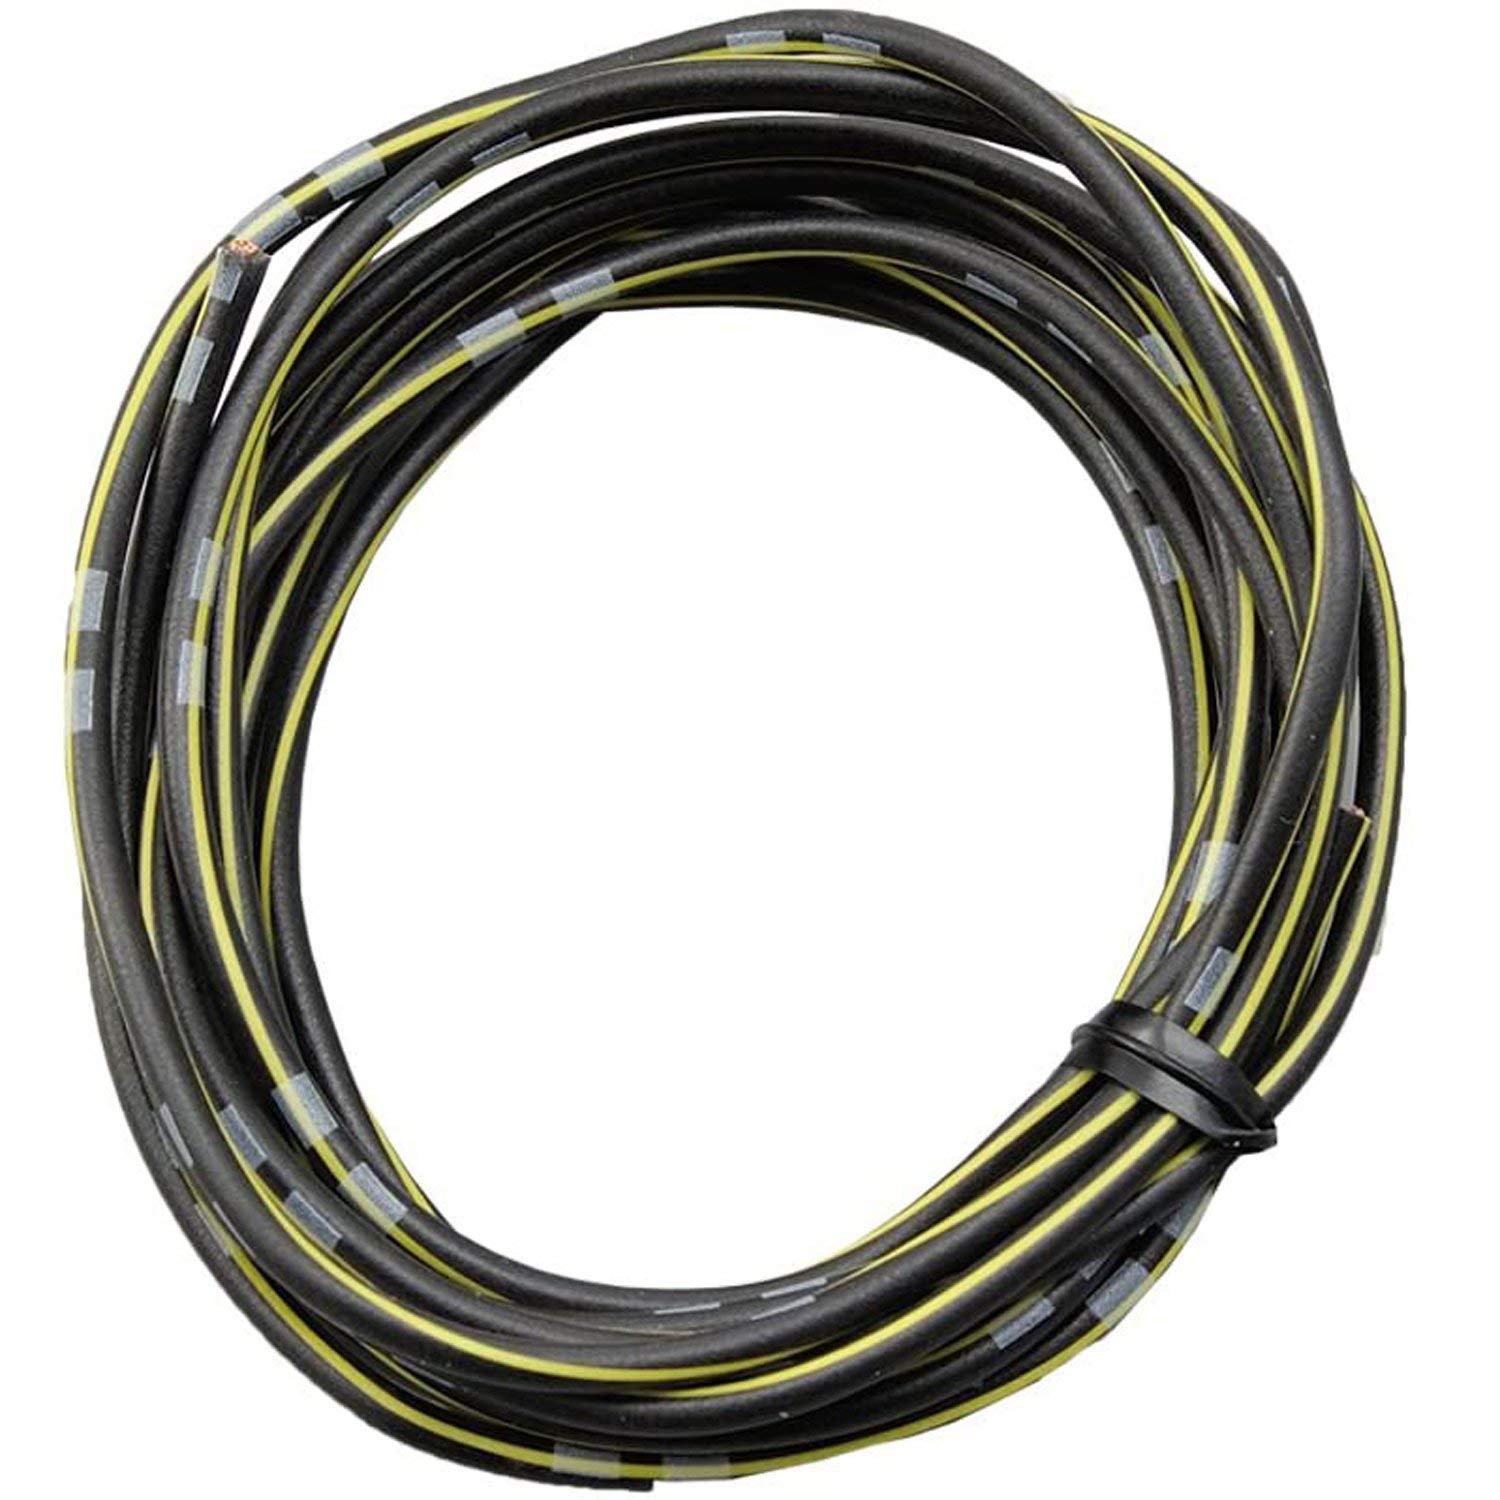 DAYTONA farbiges Kabel AWG18 0.75qmm, 2 Meter, schwarz/gelb von Daytona